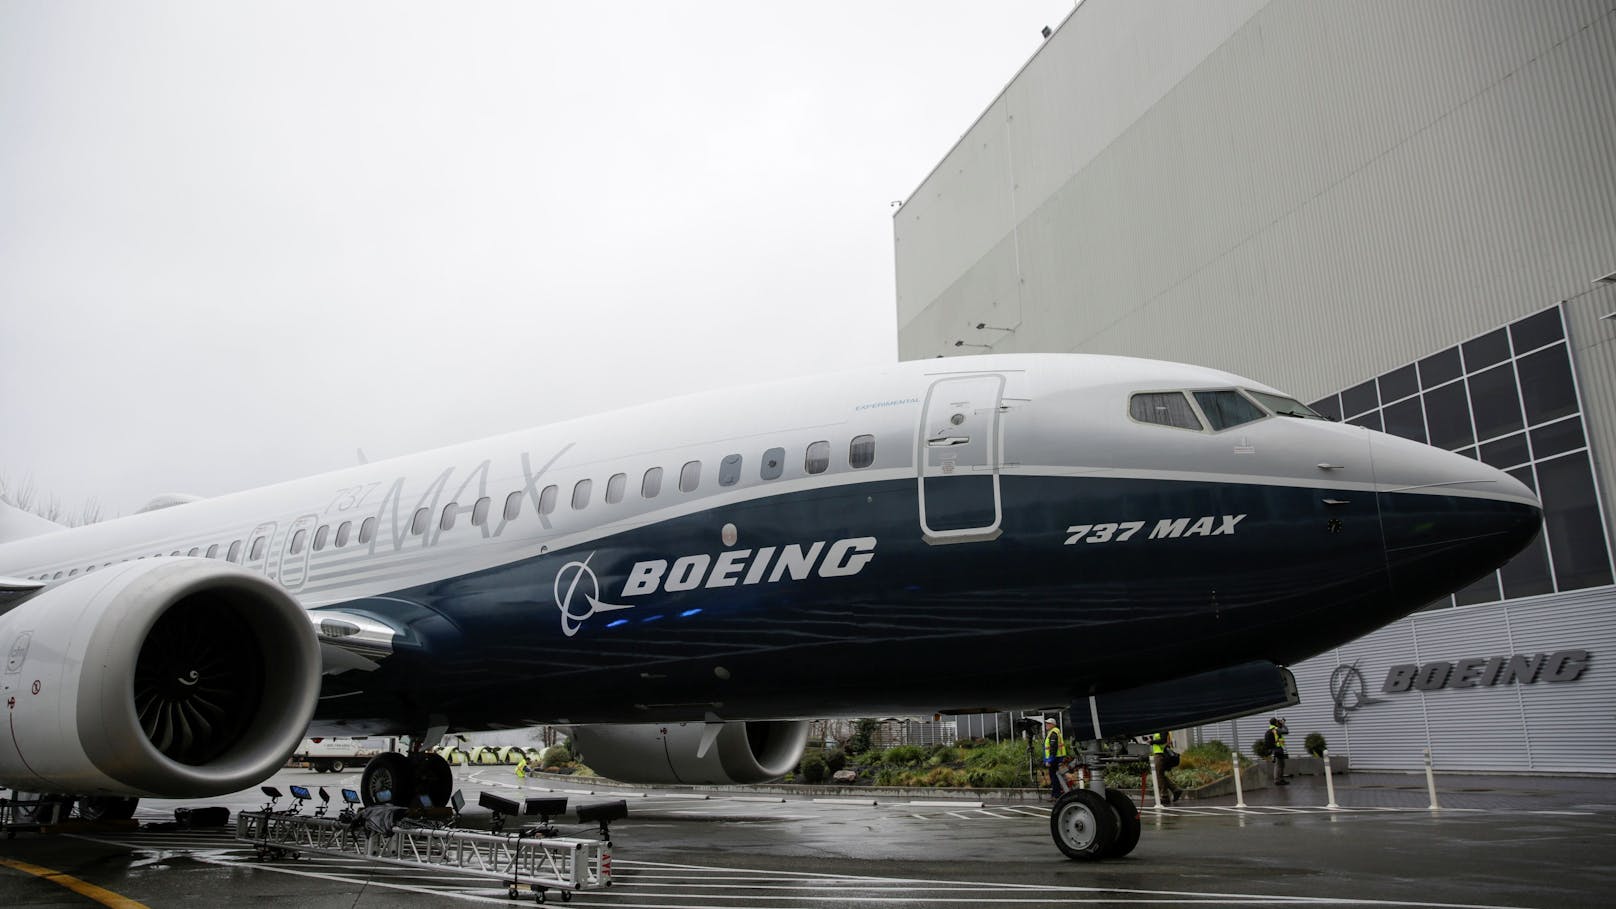 Am 5. Februar 2018 enthüllt Boeing die erste Boeing 737 Max. Das Modell sorgt seit Jahren für Probleme.